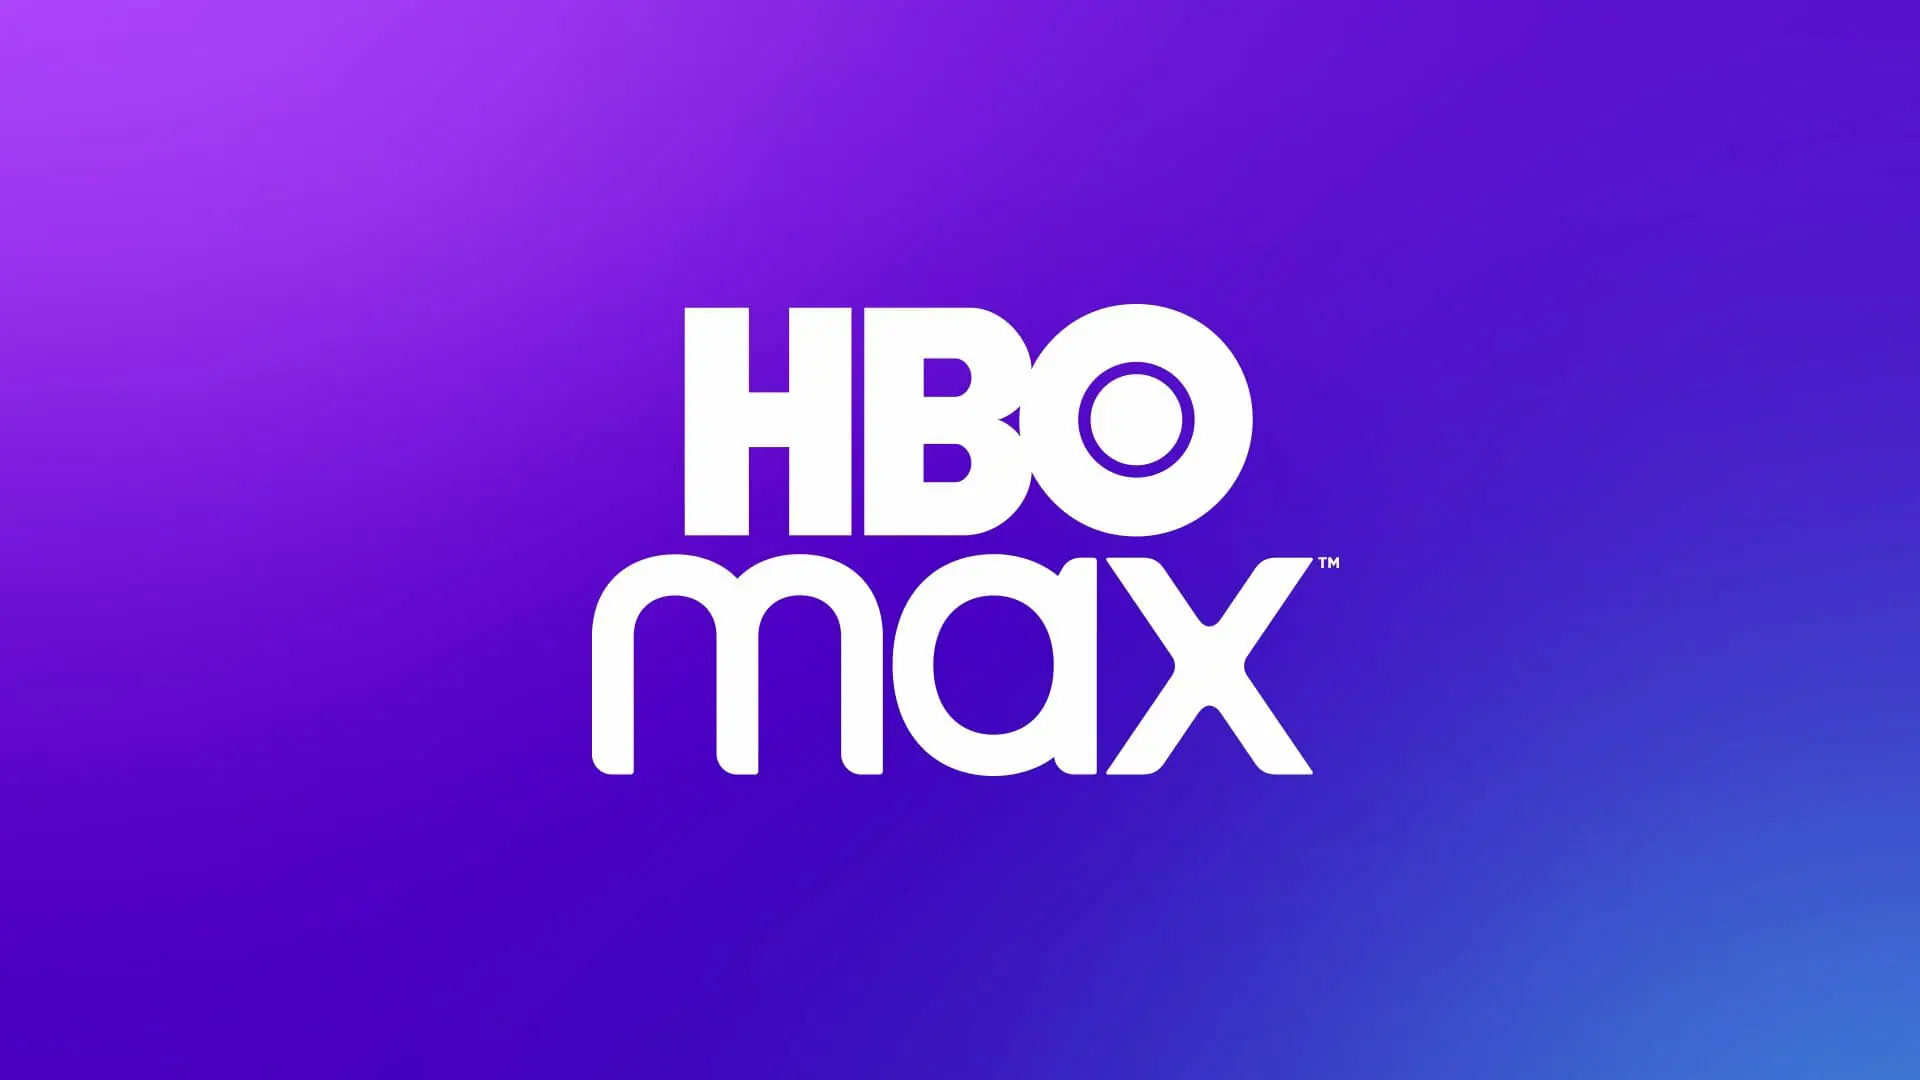 Fionna e Cake: Spin-off de Hora de Aventura ganha data de estreia no HBO  Max - GKPB - Geek Publicitário